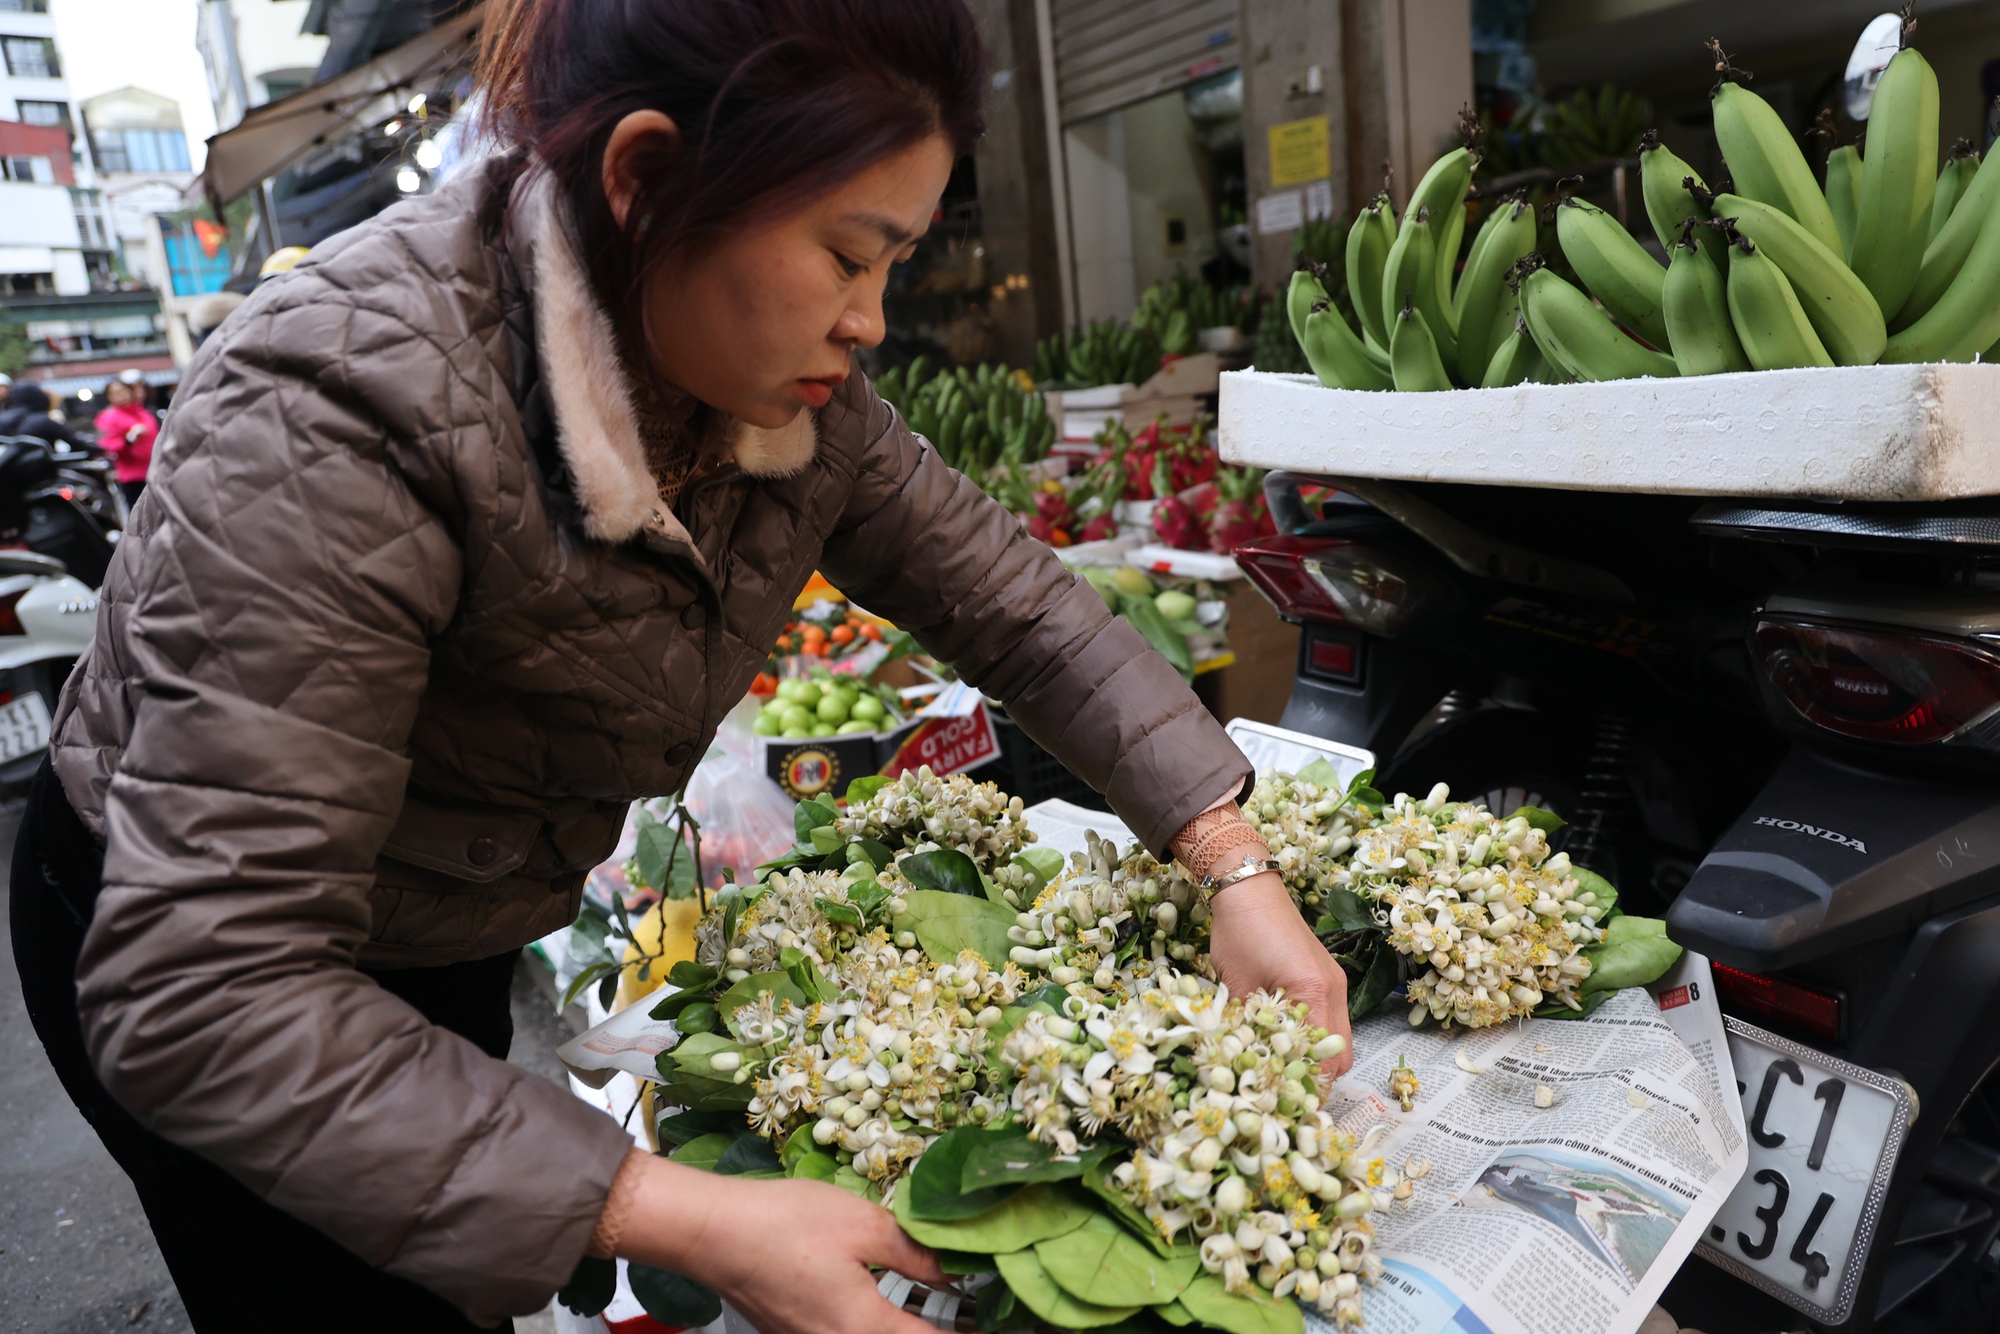 Hoa bười cũng là mặt hàng bán chạy nhất trong những ngày này. Khách mua hoa bưởi không phải vì đẹp mà bởi yêu thích mùi hương nên mỗi lần mua chỉ vài lạng.